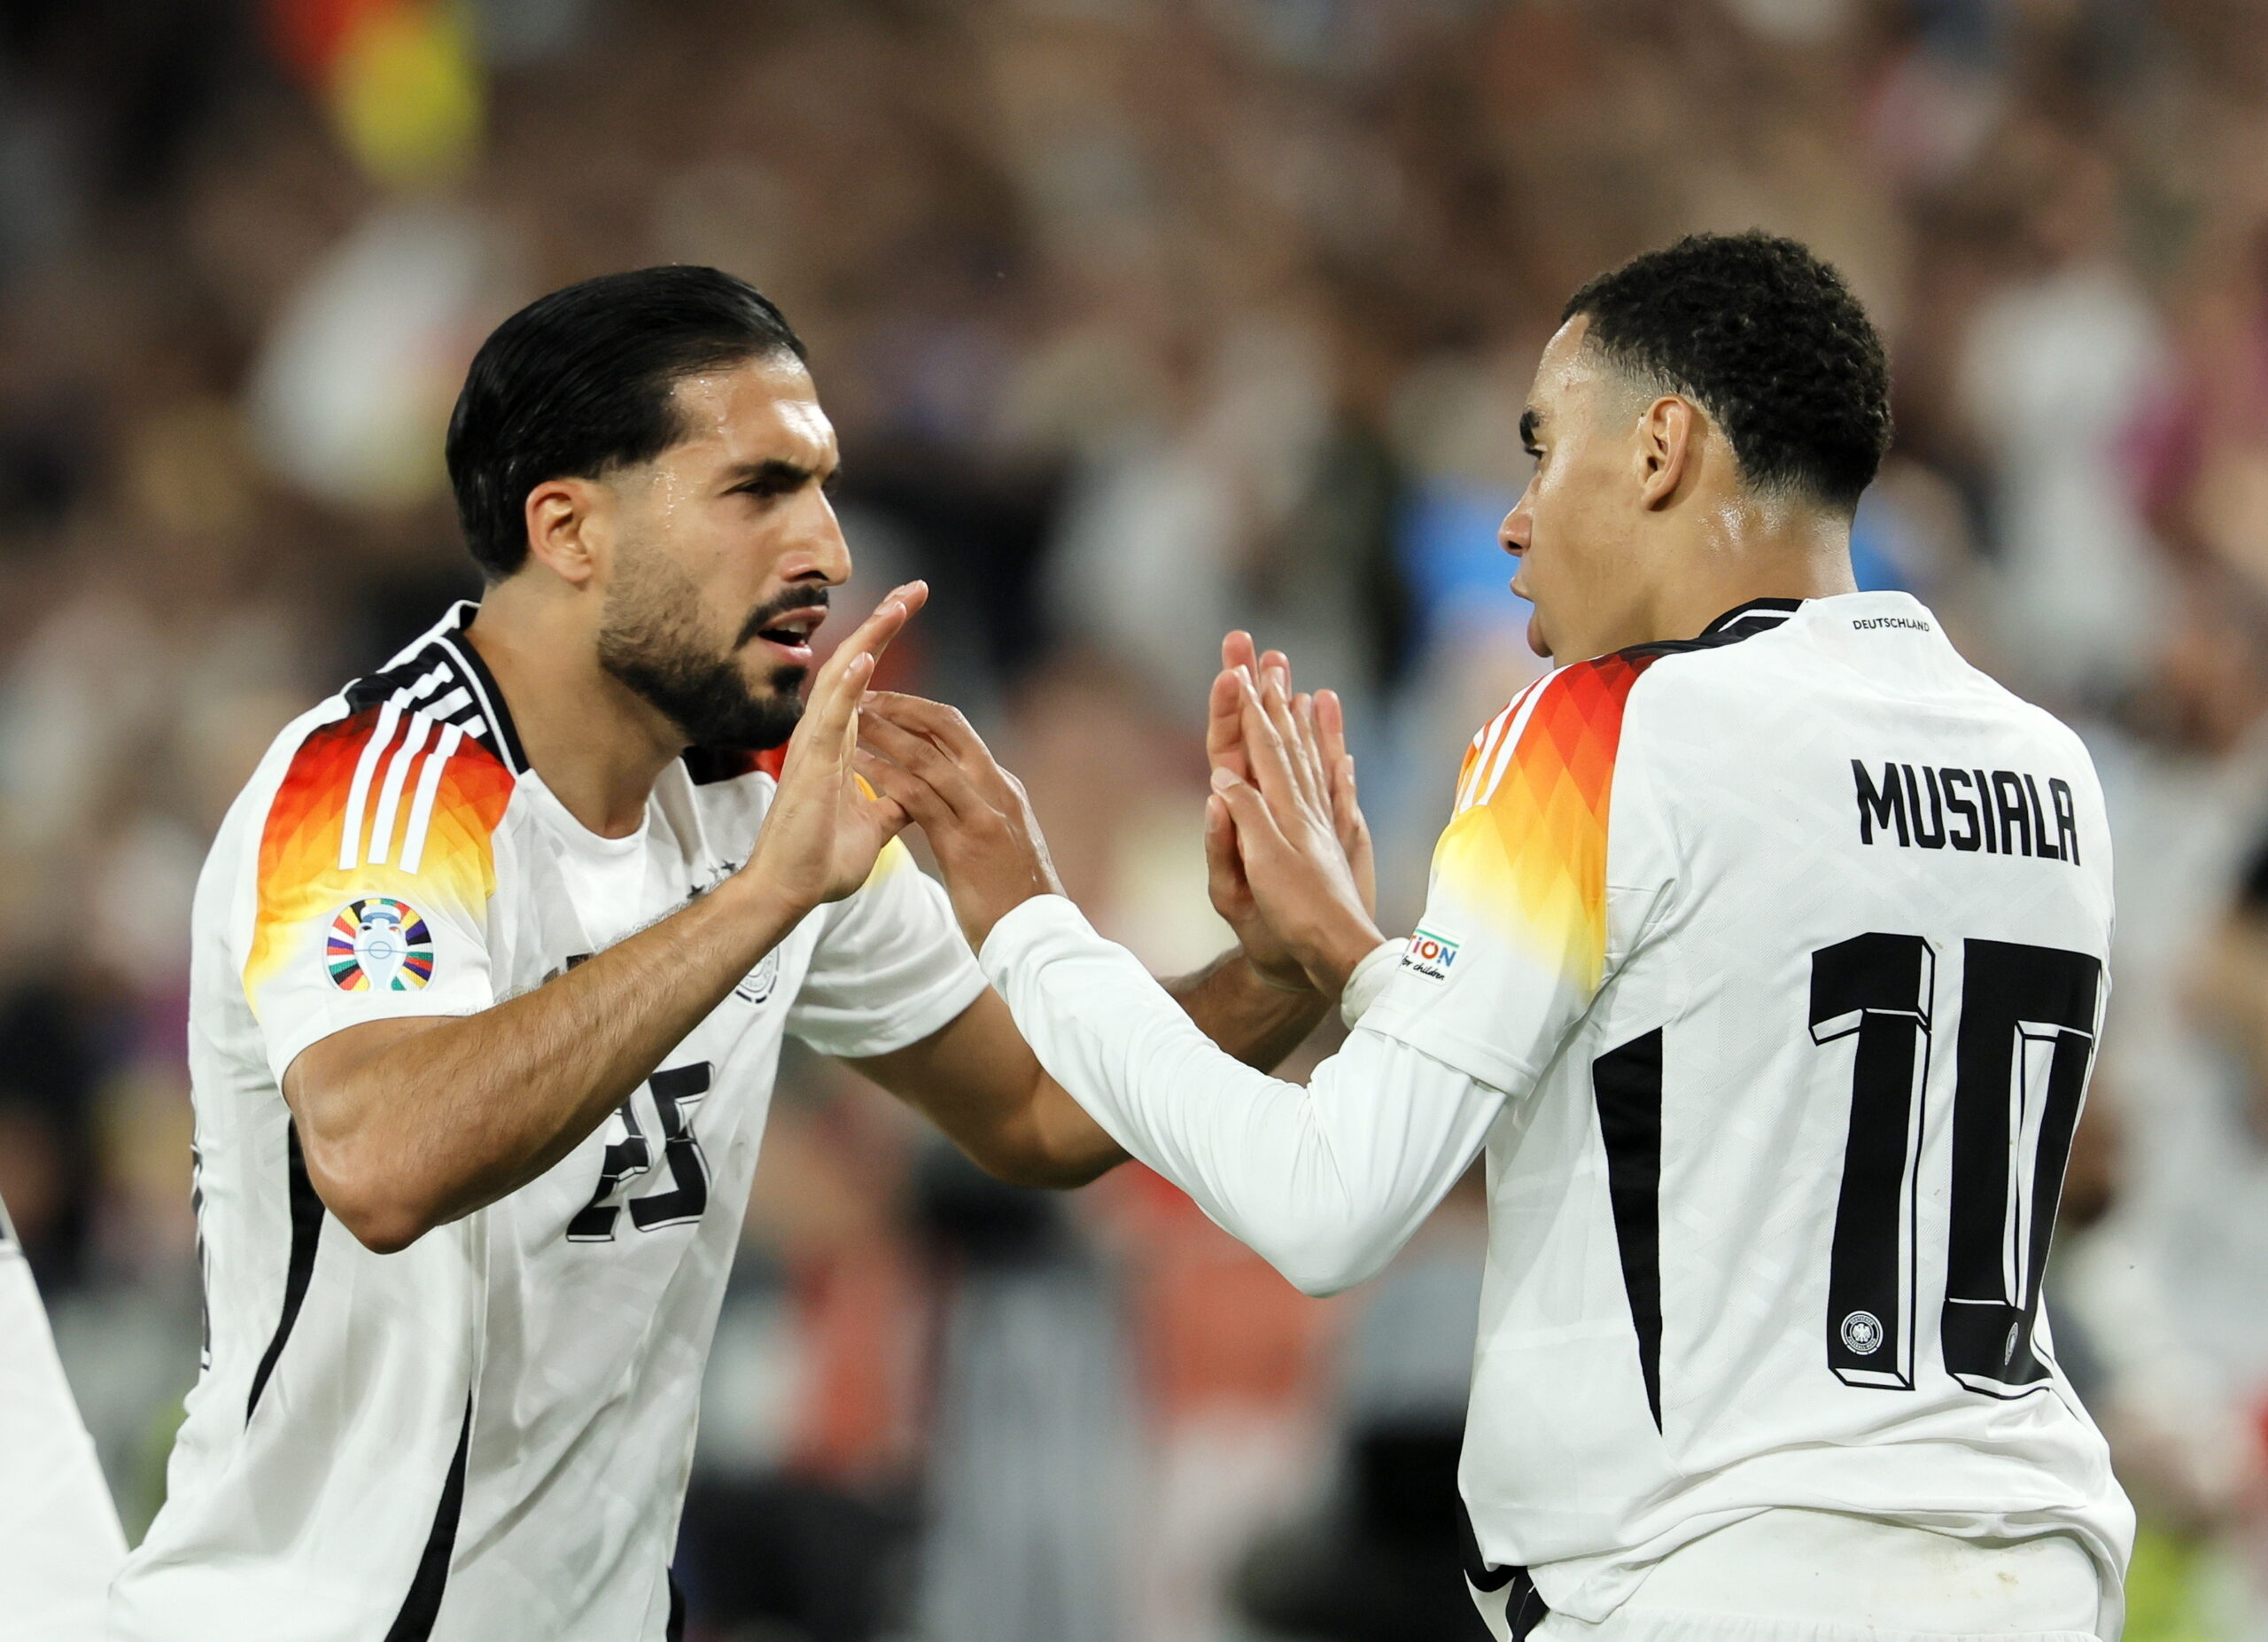 Németország megverte a nagyot küzdő Dániát, negyeddöntőbe jutottak a házigazdák